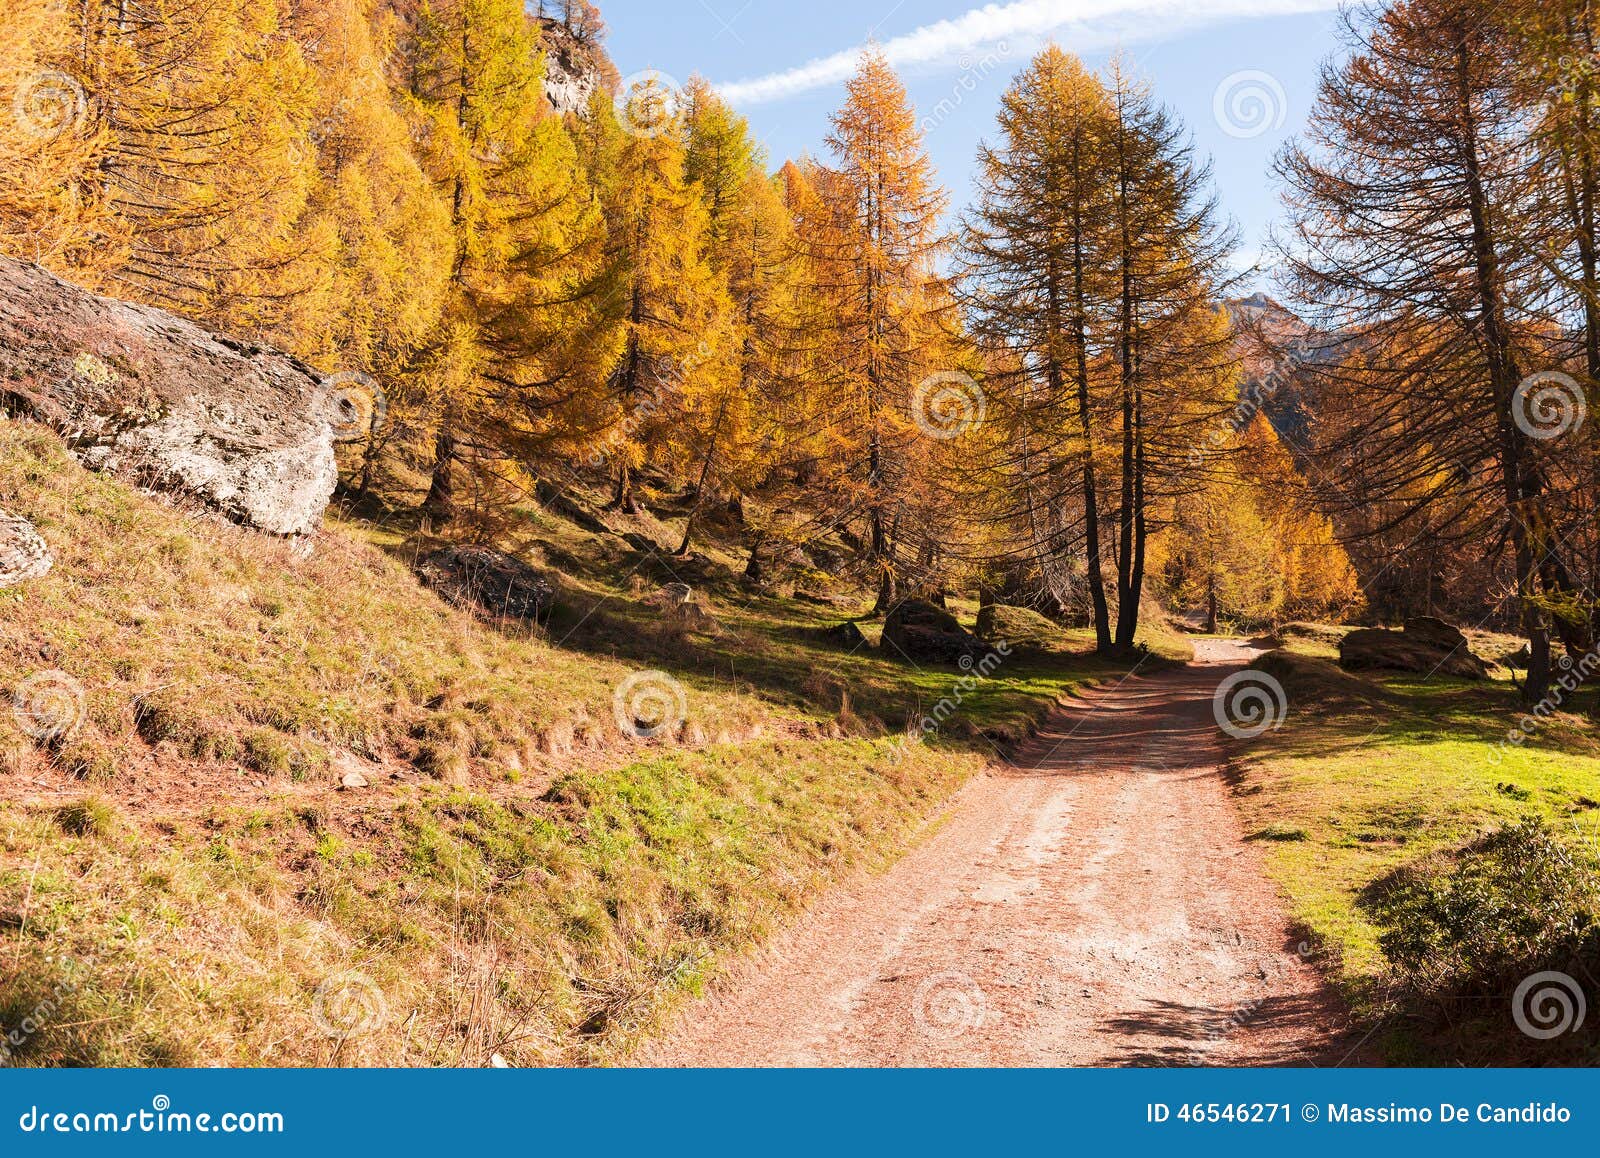 mountain forest in autumn season